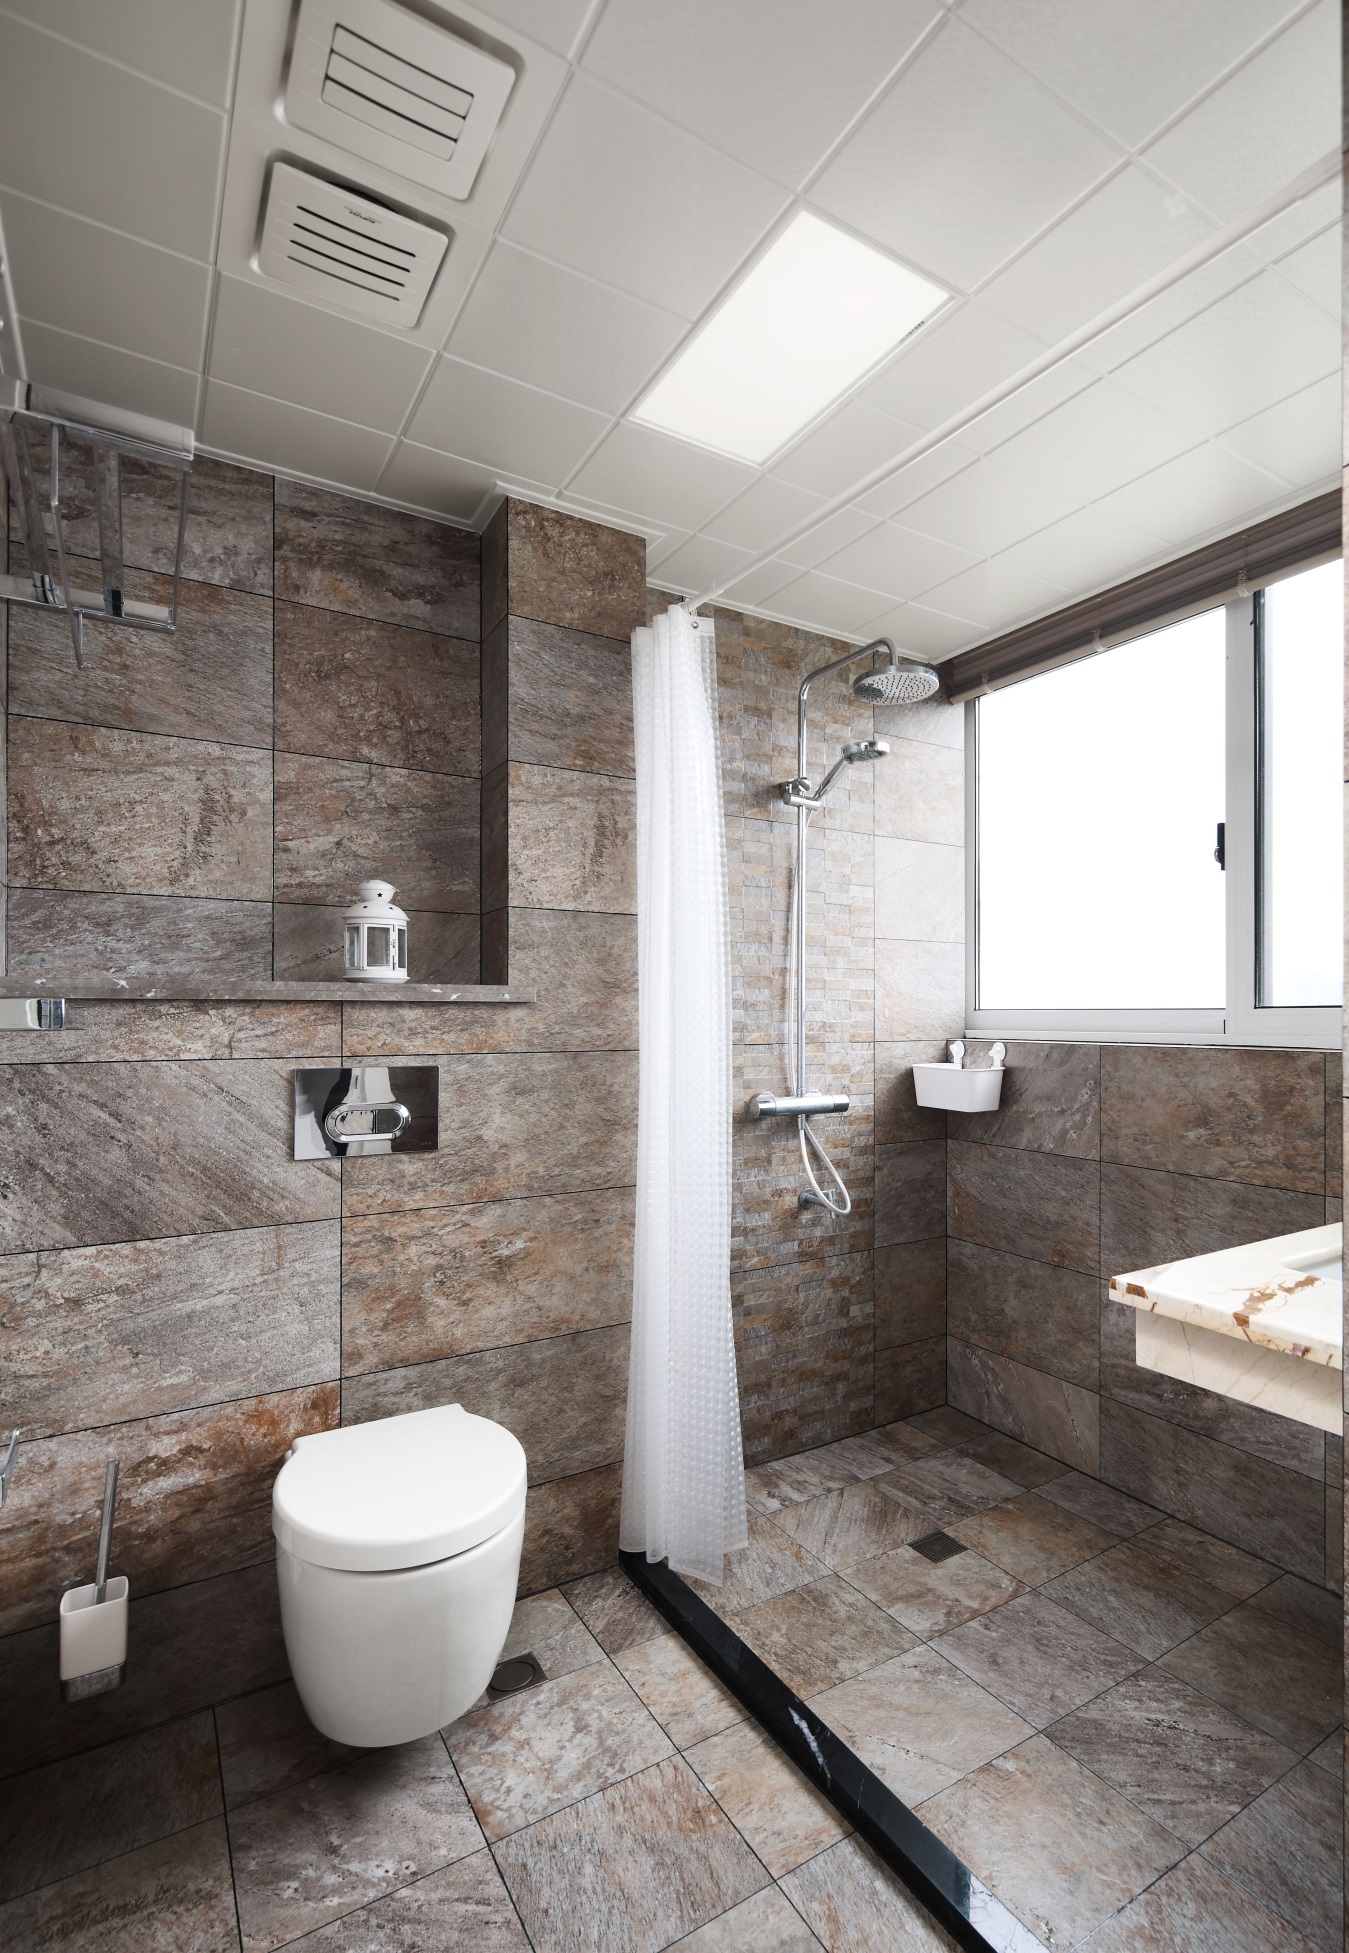 设计师为业主一家打造了一个高效的卫浴空间，采用浴帘作为干湿分离。 